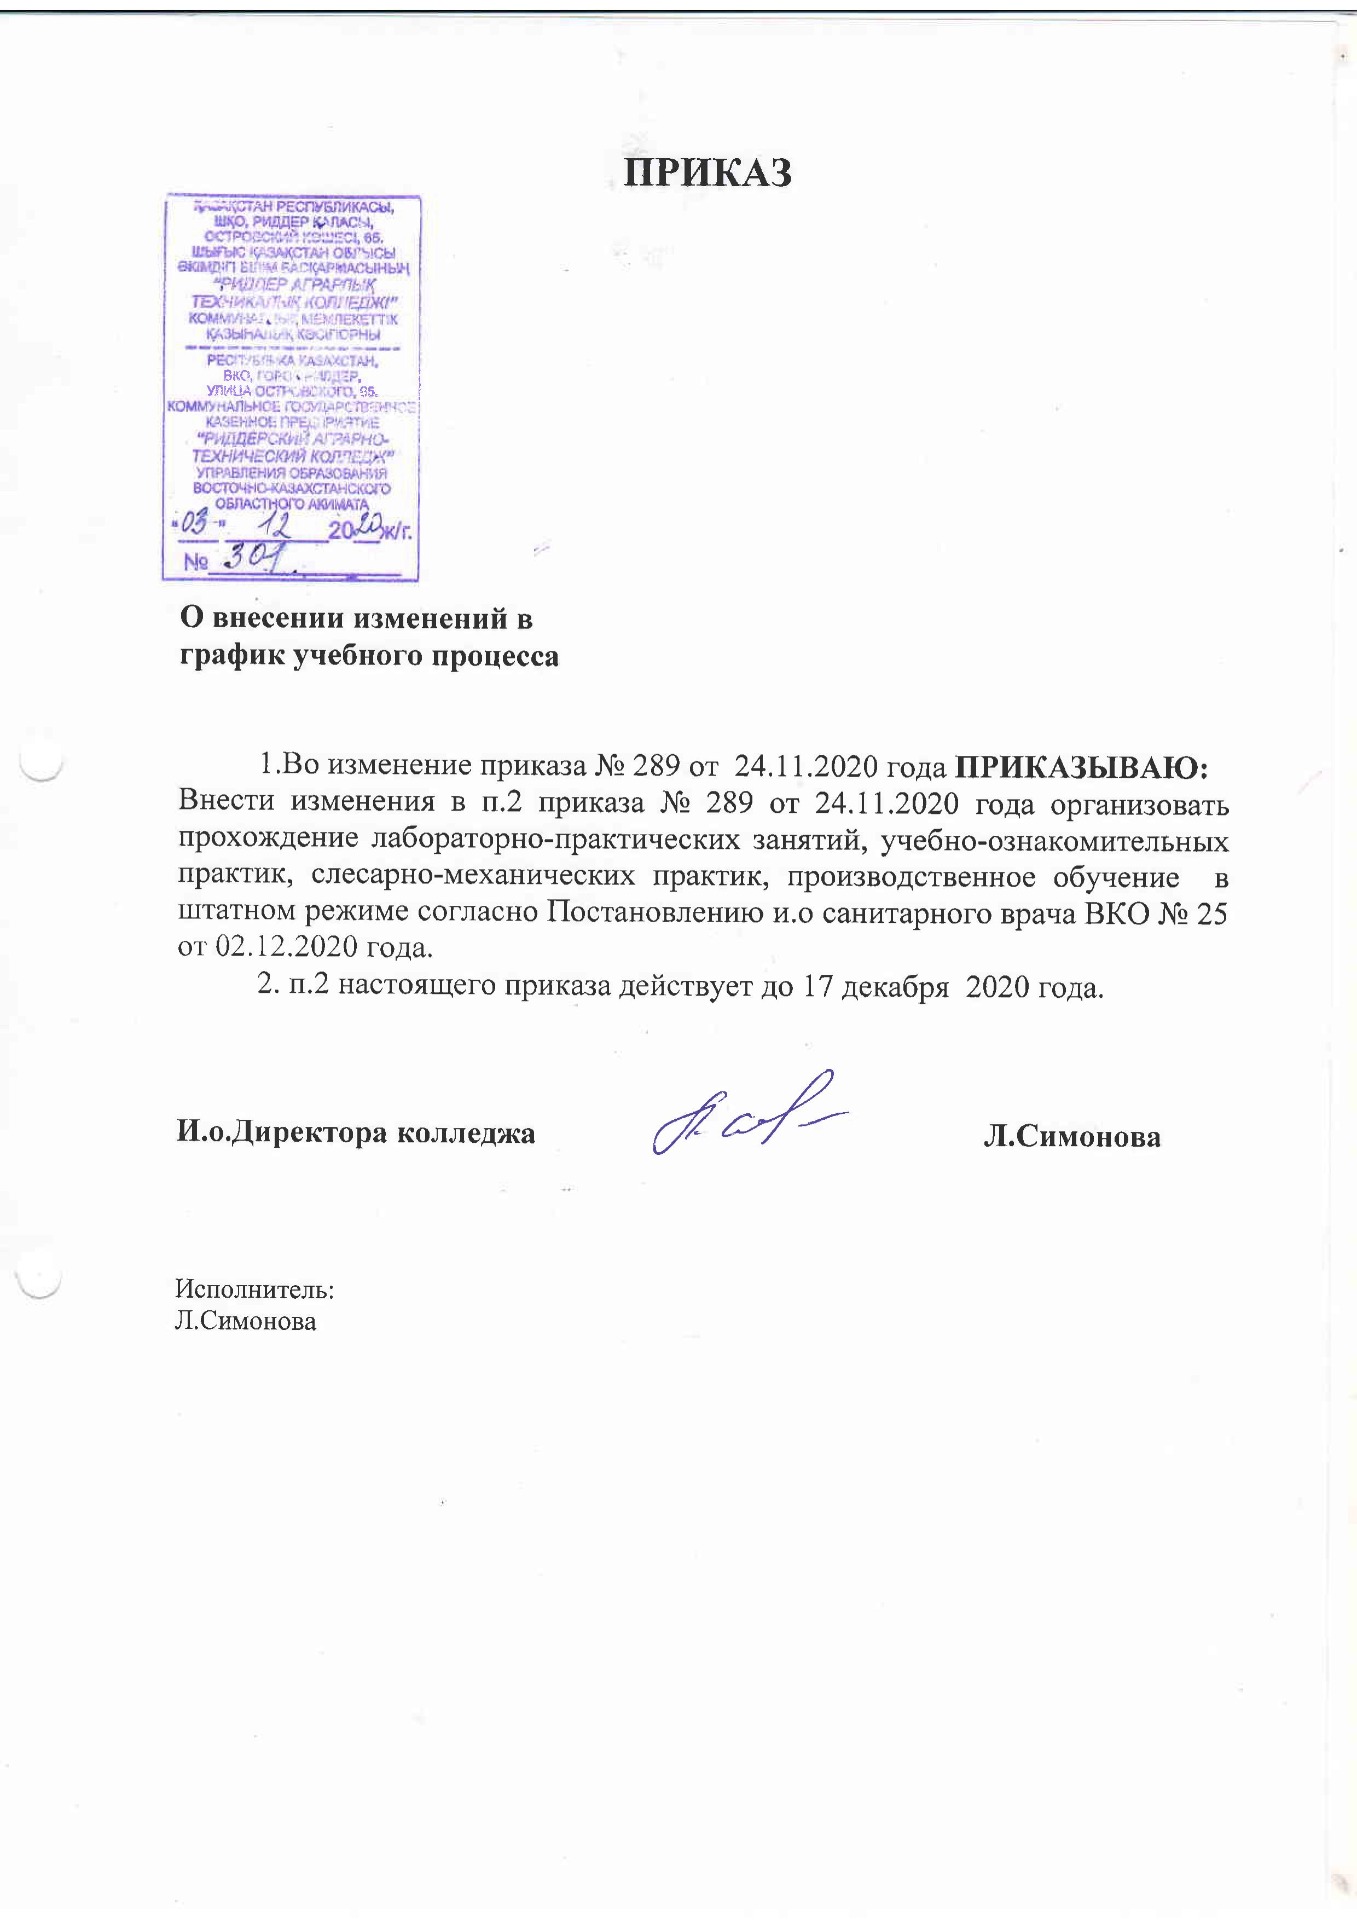 Приказ о внесении изменений в график учебного процесса от 3.12.2020 - Картинка 1